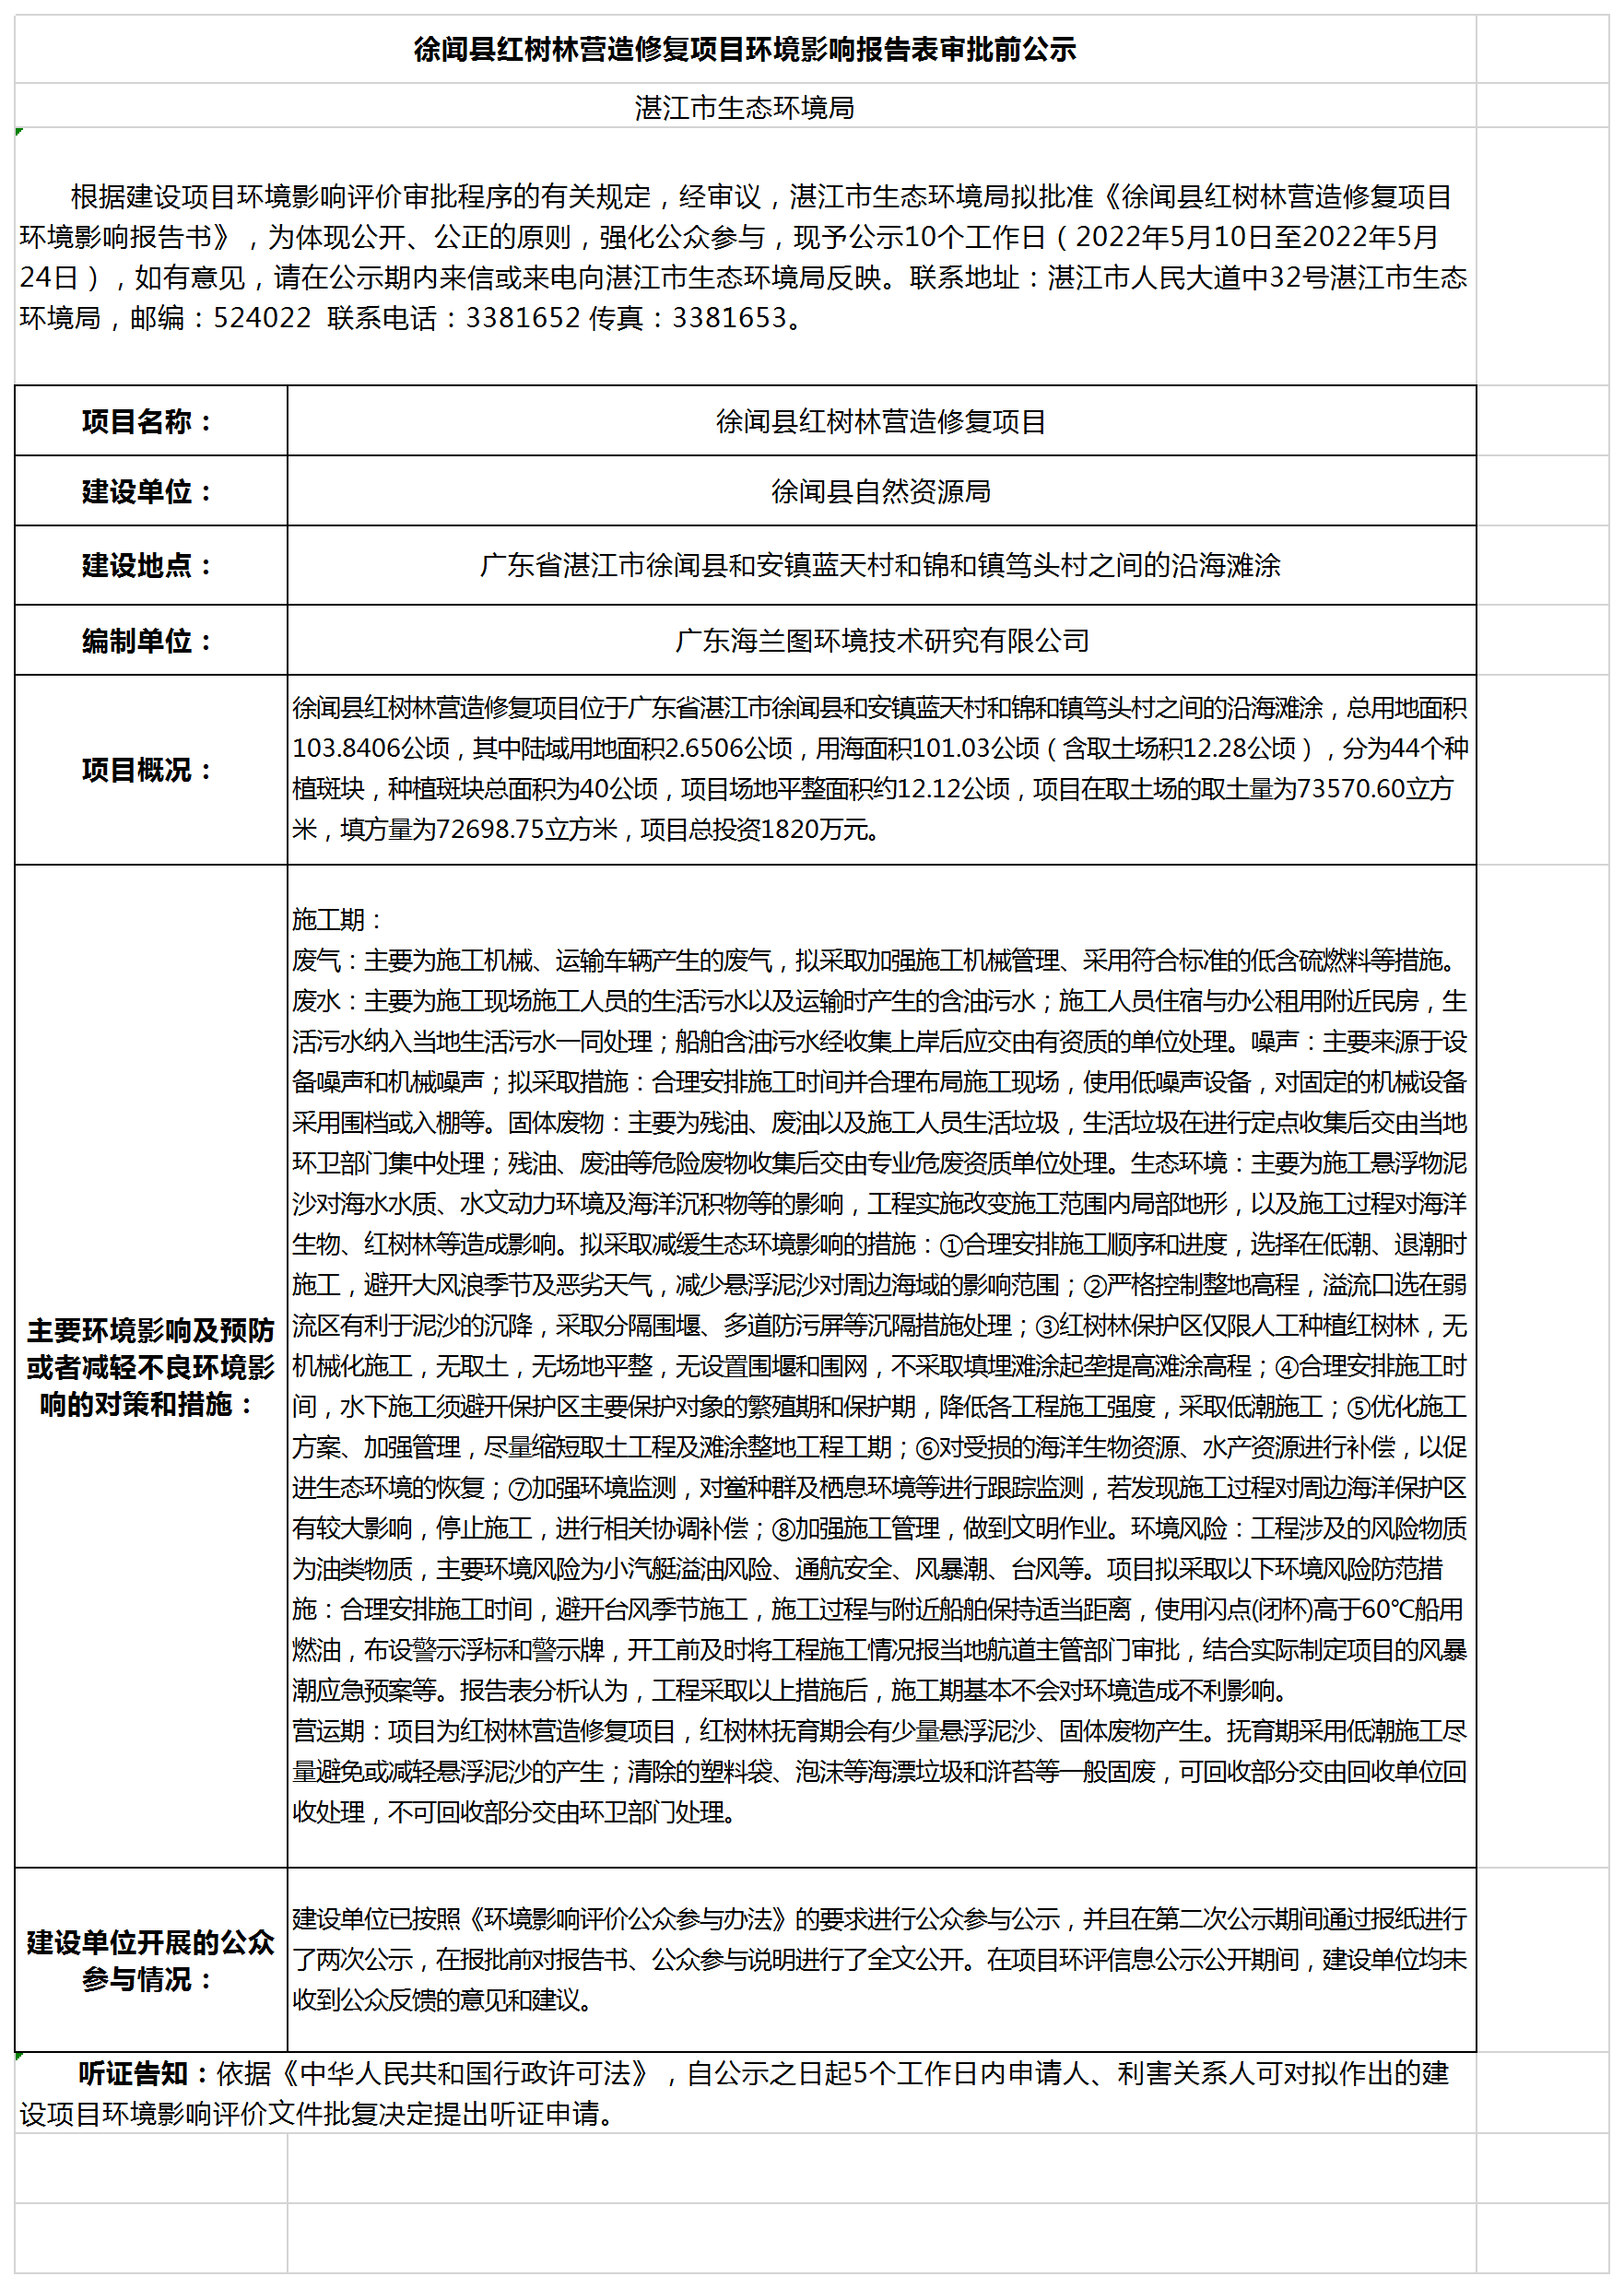 徐闻县红树林营造修复项目环境影响报告表审批前公示.png